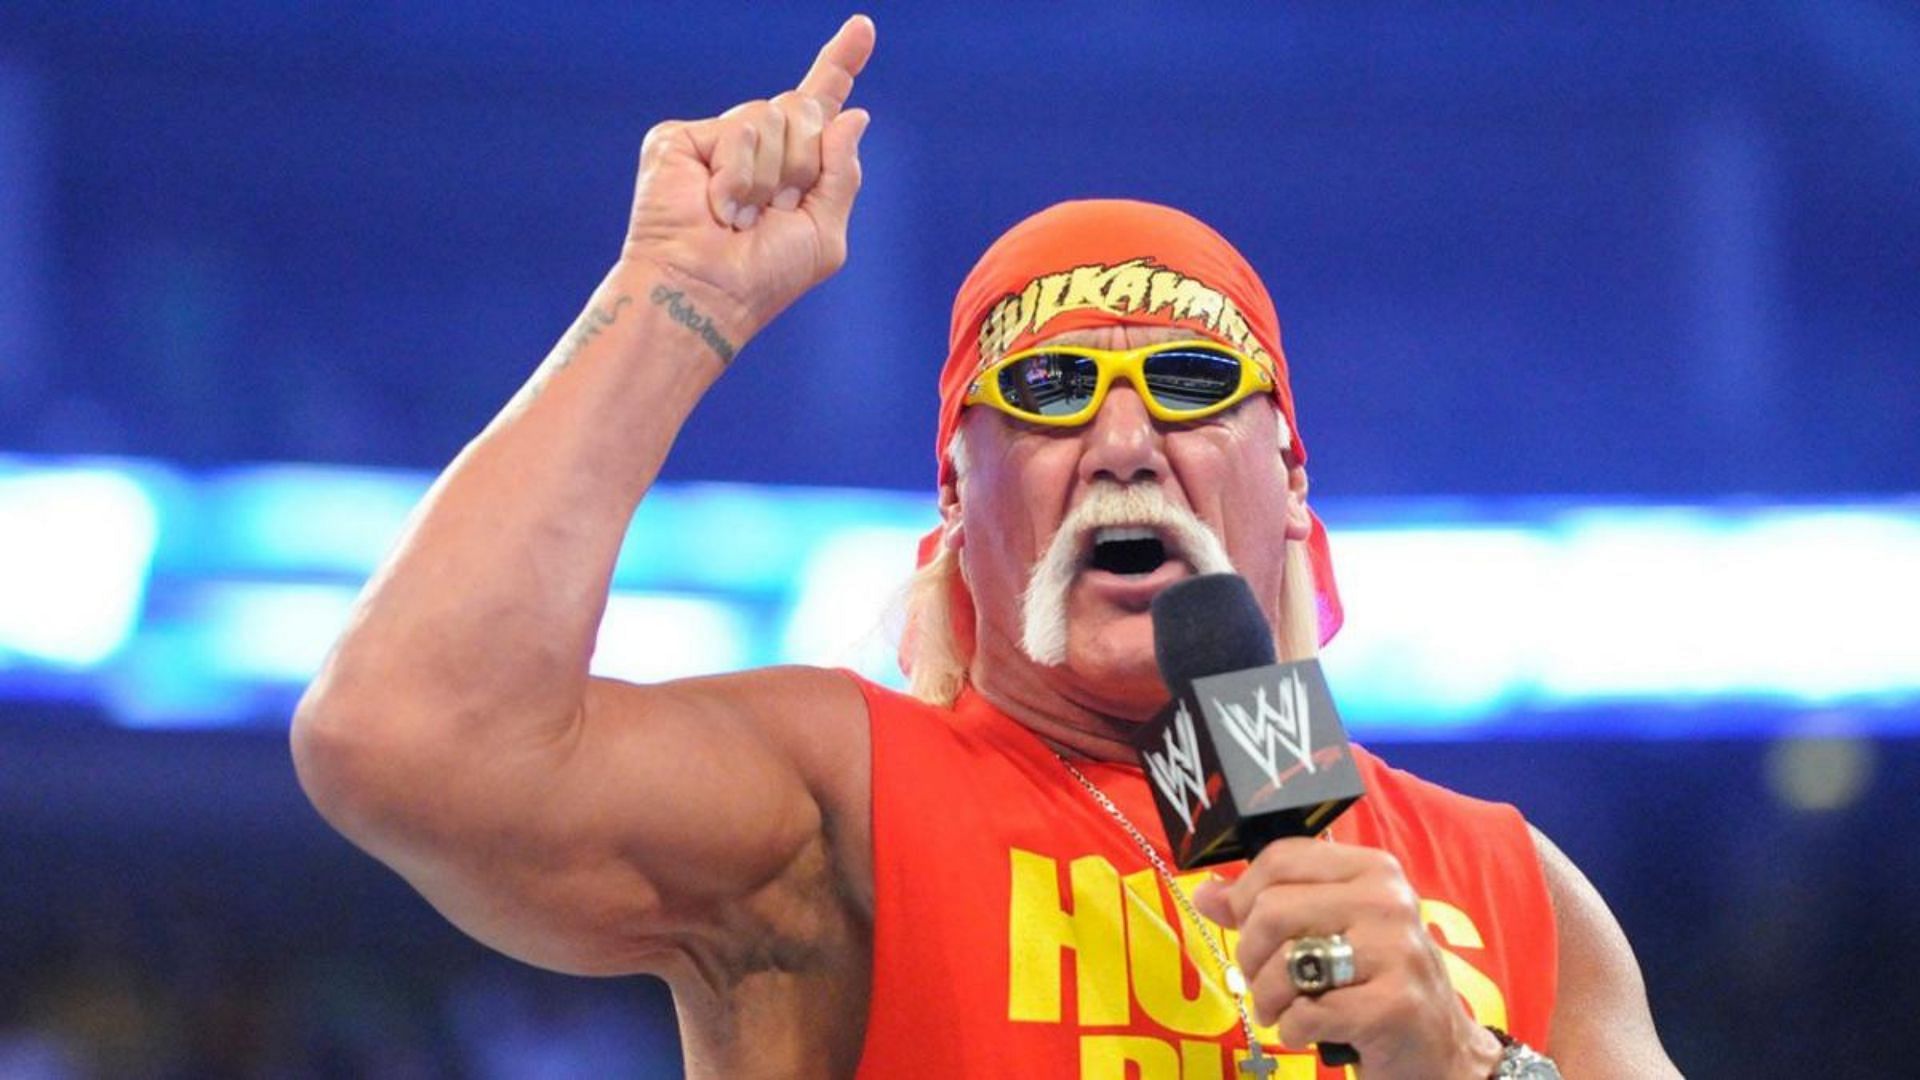 Hulk Hogan praised Jinder Mahal on Instagram last week.